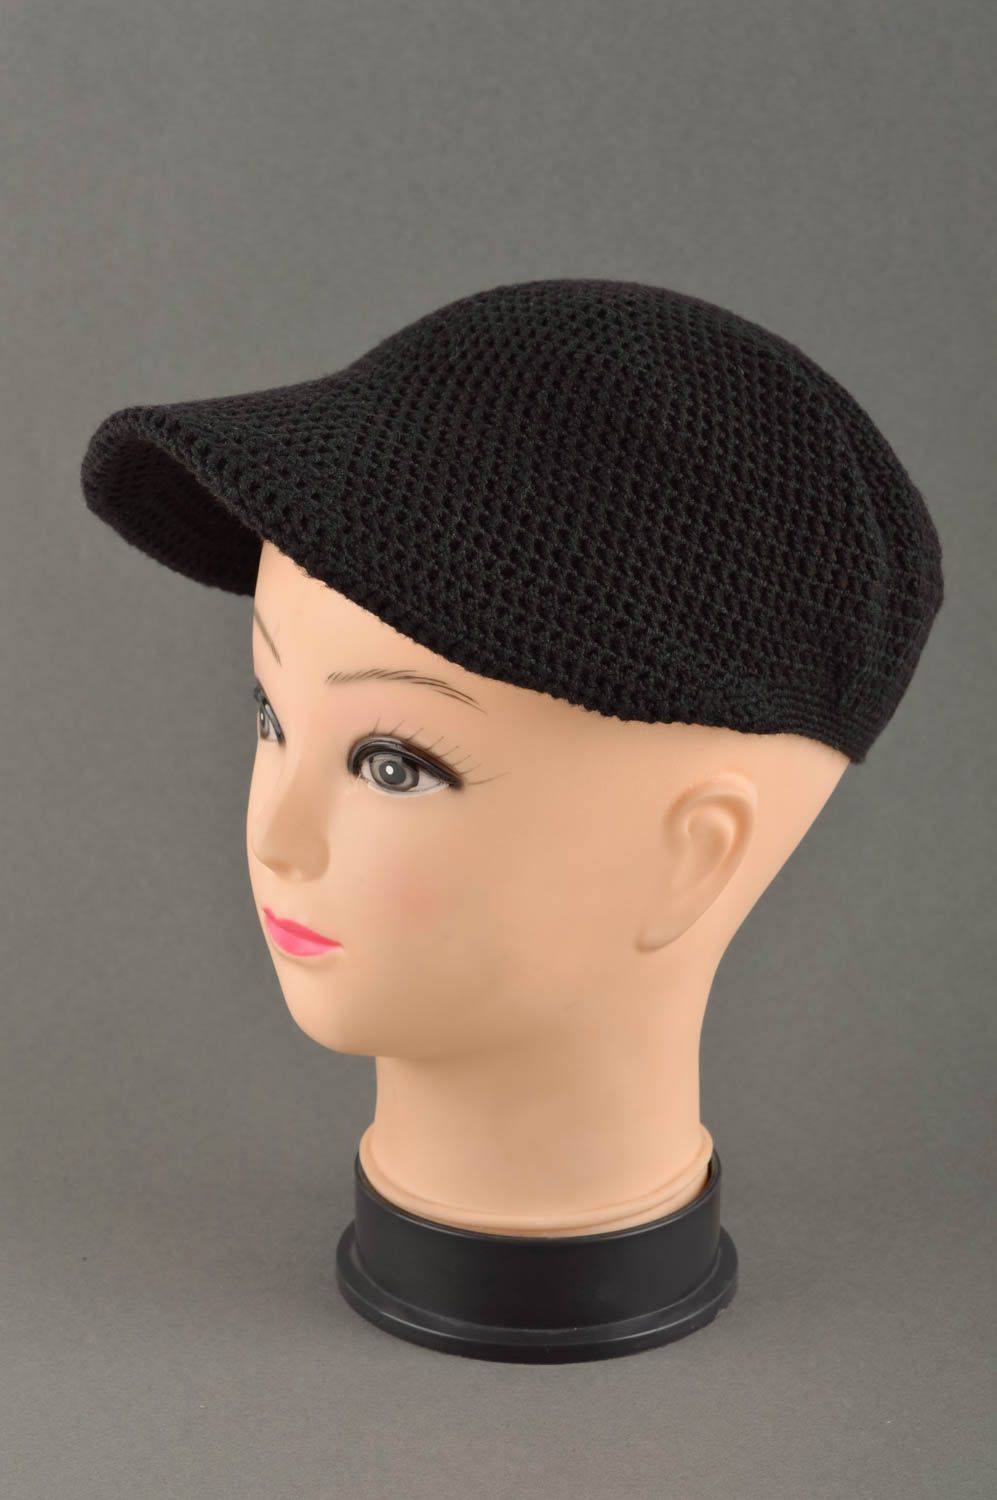 Вязаная кепка ручной работы вязаная шапка черная стильная зимняя шапка фото 1